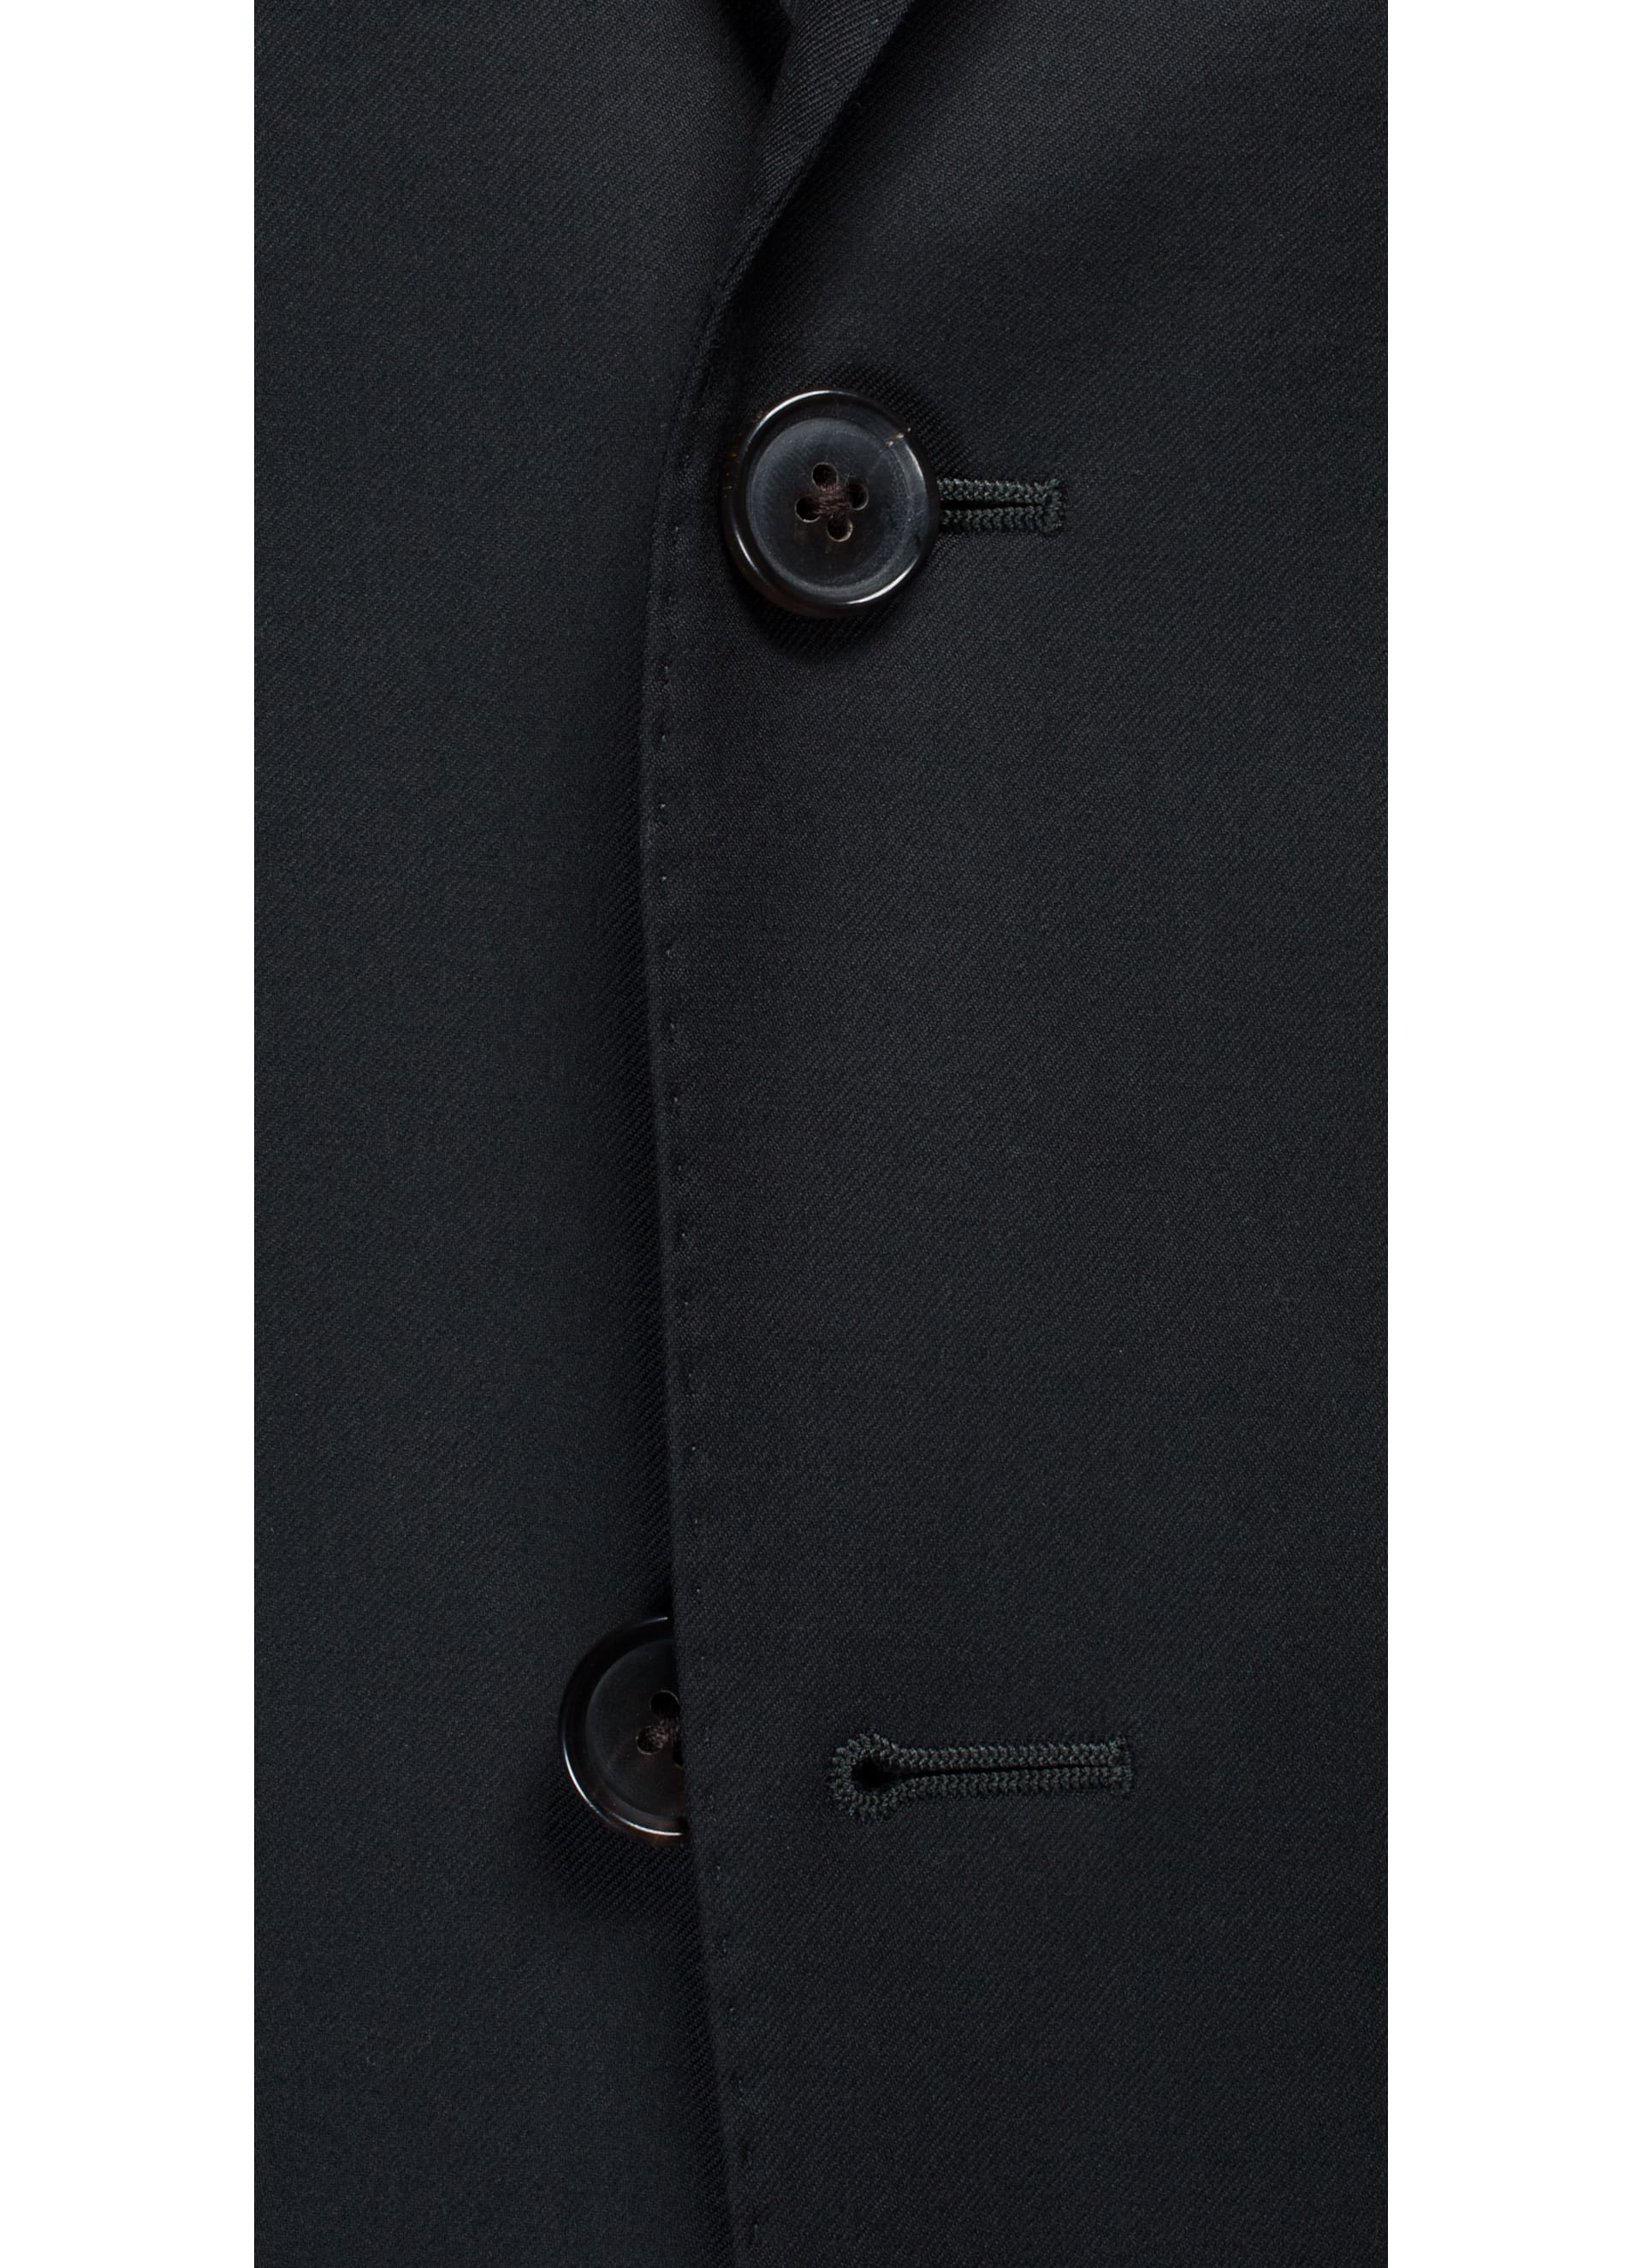 Suit Black Plain Sienna P3599vi | Suitsupply Online Store